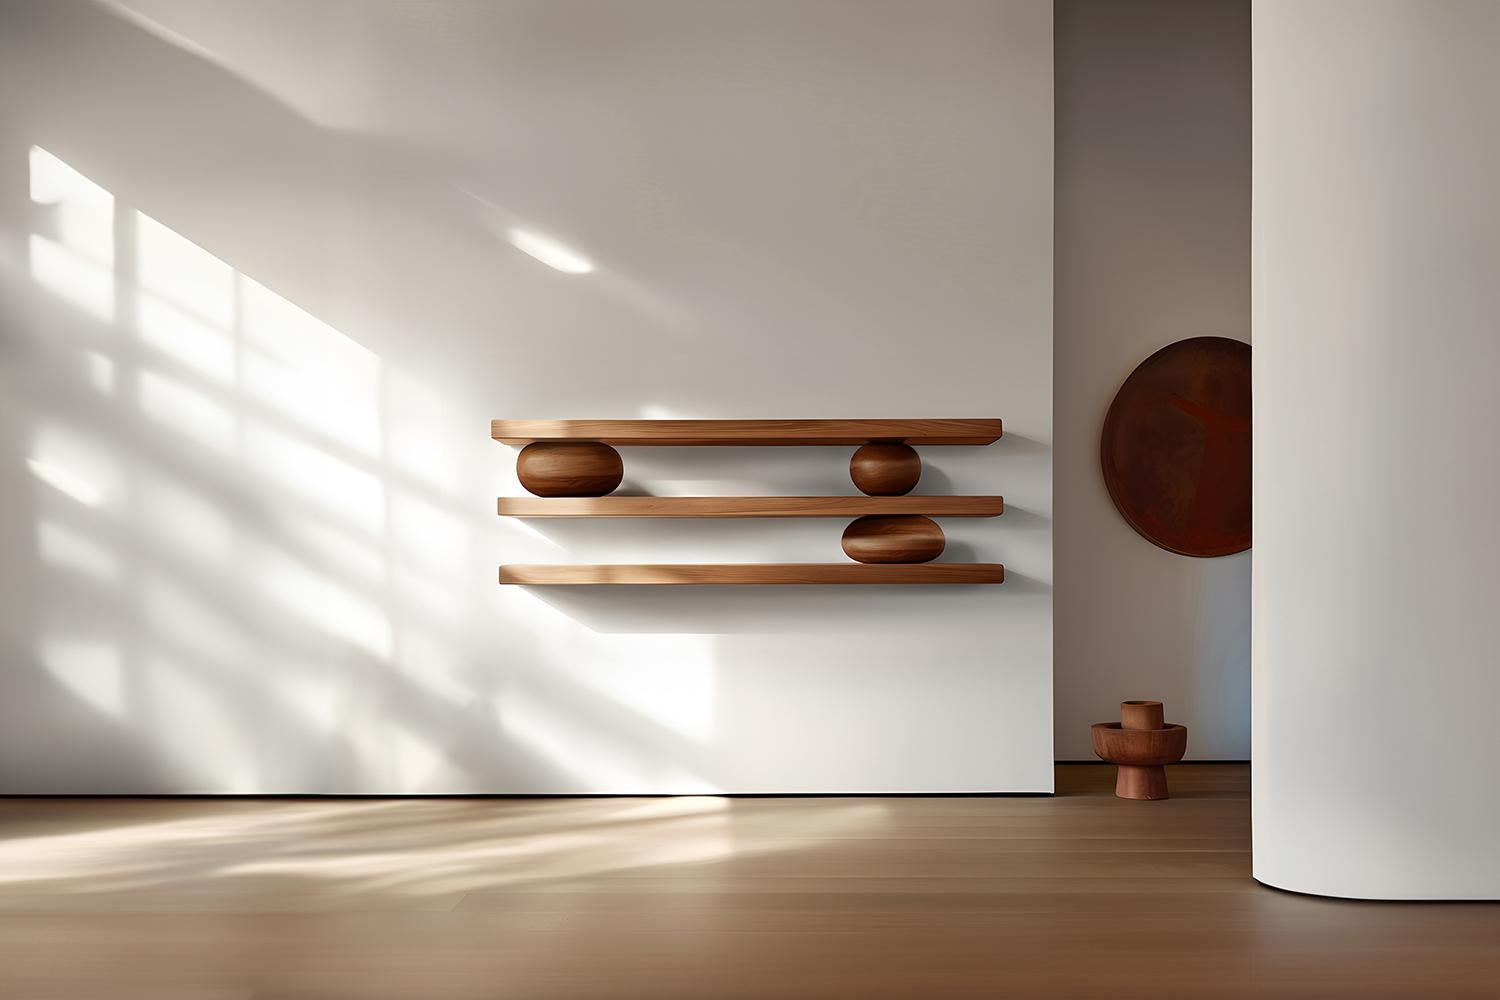 Ensemble de trois étagères flottantes avec trois accents de galets sculpturaux en bois, Sereno by Joel Escalona

-

Que se passe-t-il lorsque la pratique devient de l'art ?
Que se passe-t-il lorsque l'ornementation prend de l'importance ?

Telles